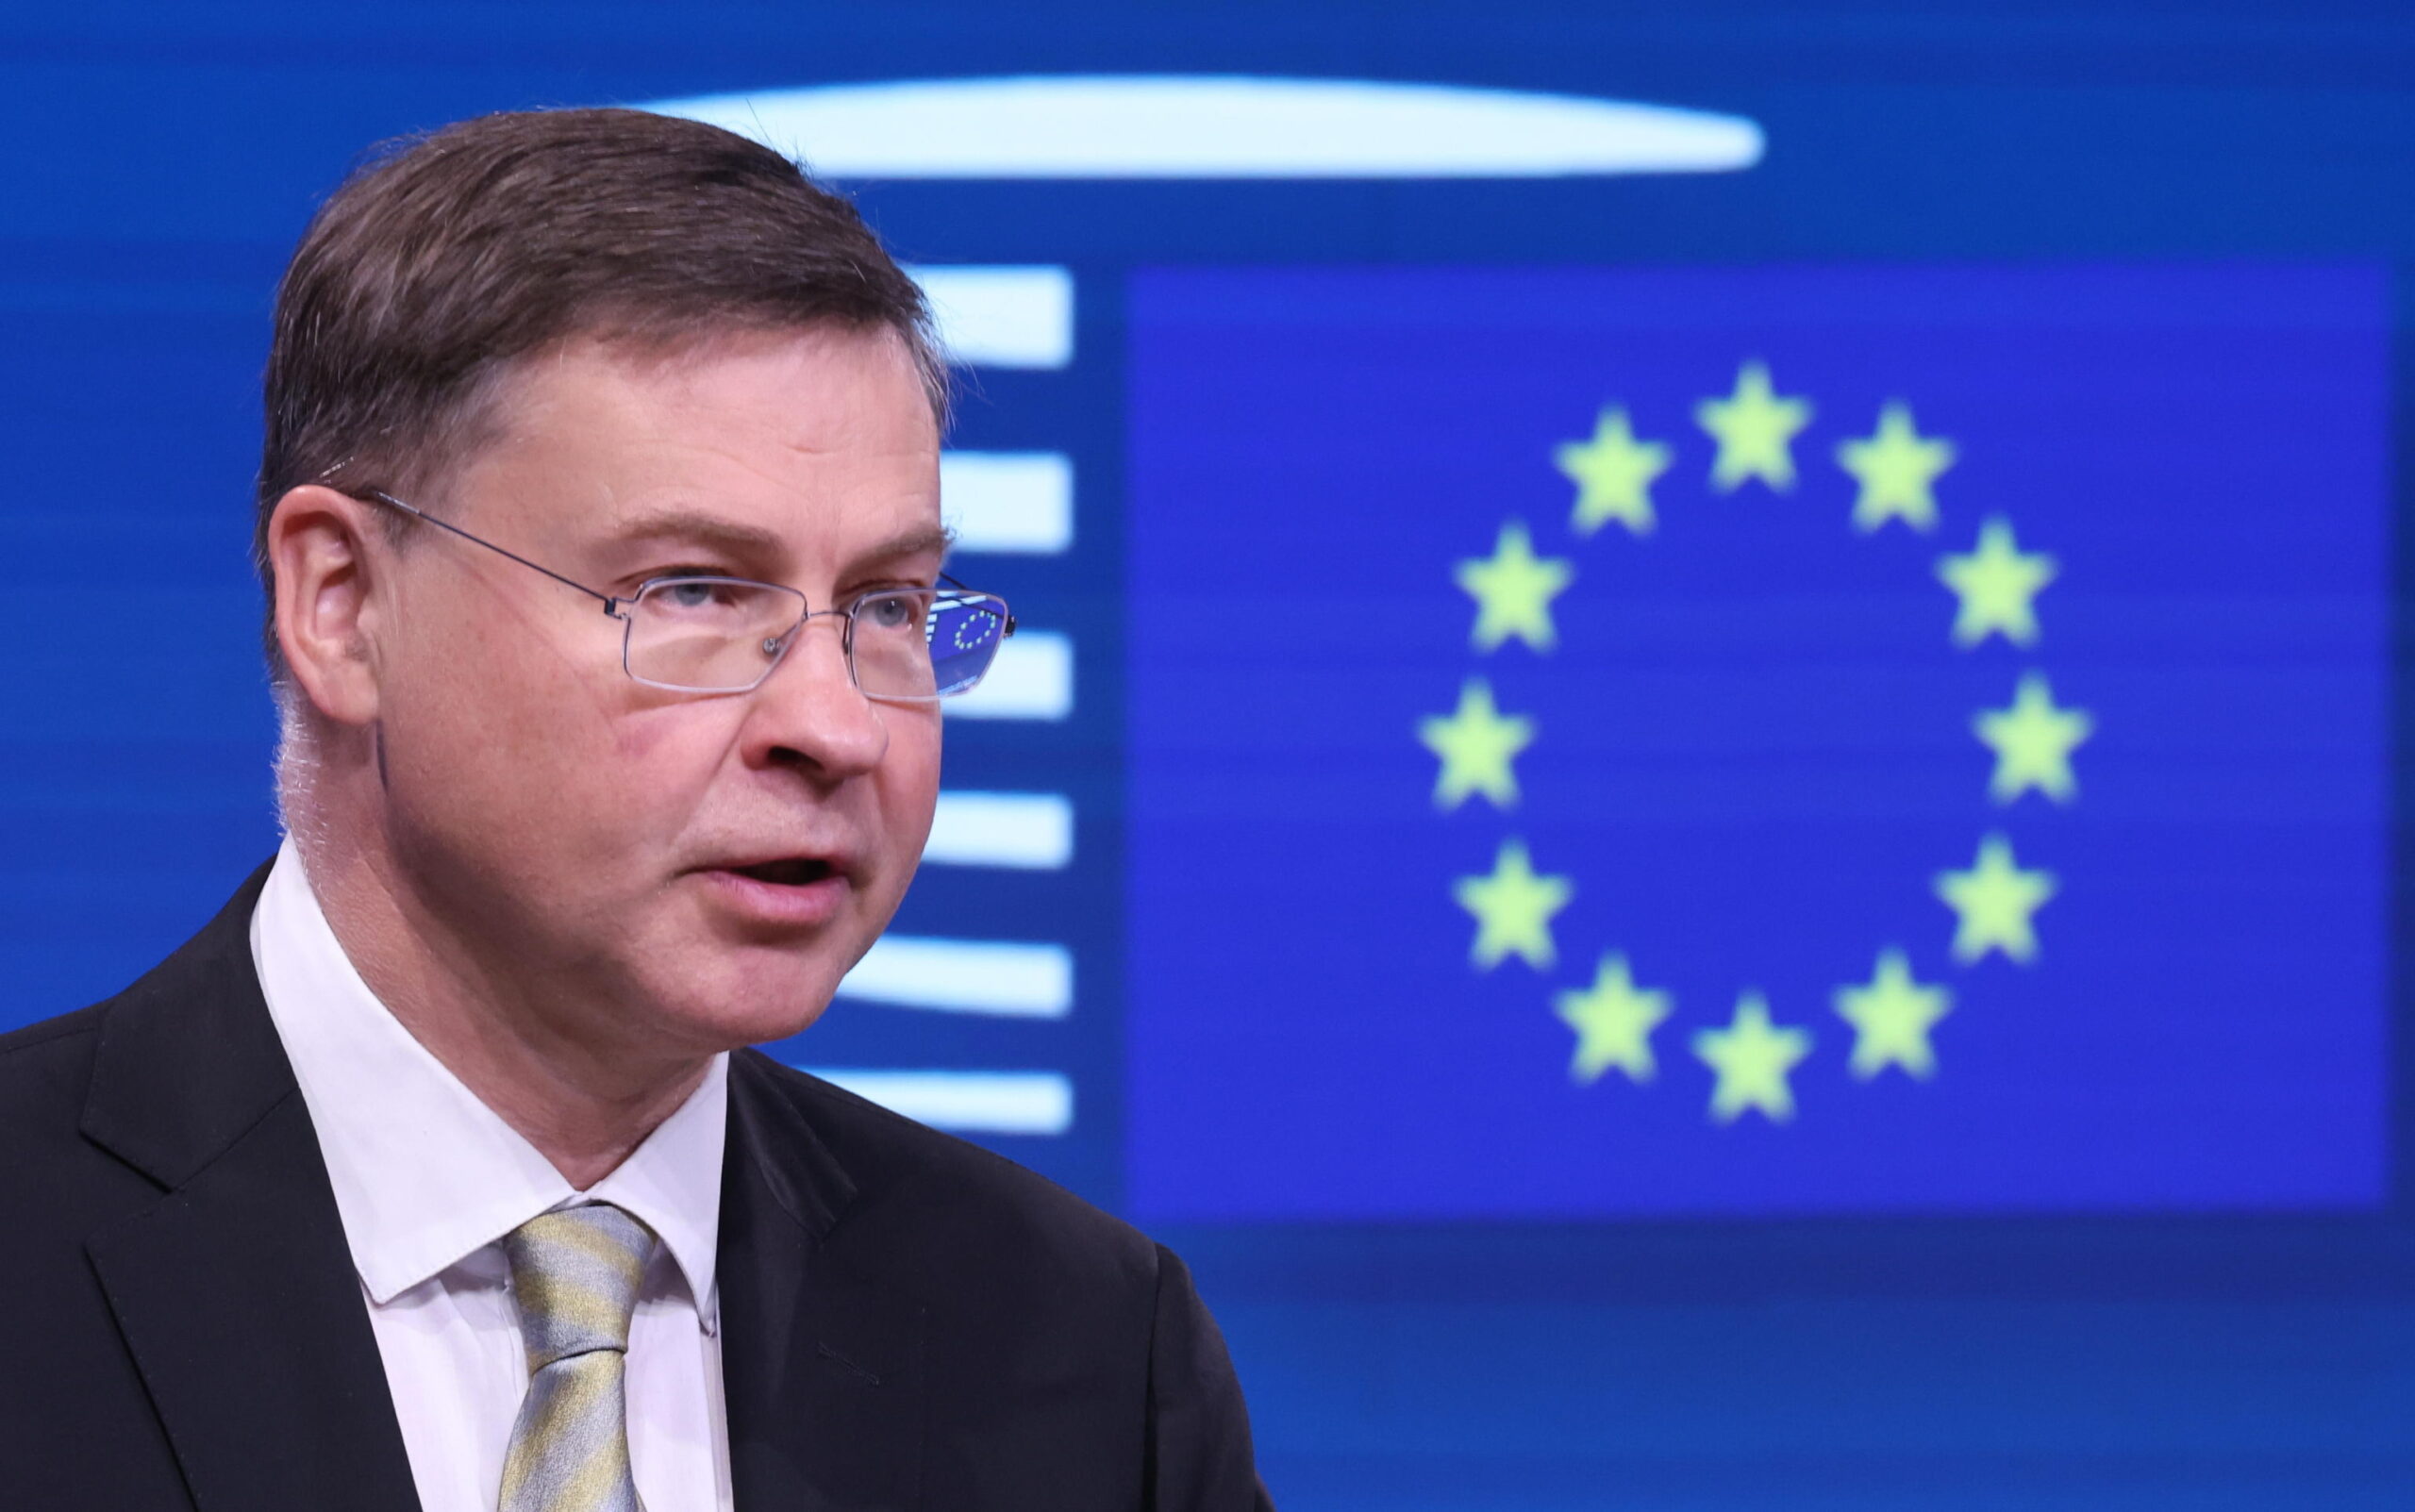 Guerra in Ucraina, Dombrovskis su Cina: “rischi in termini di reputazione”